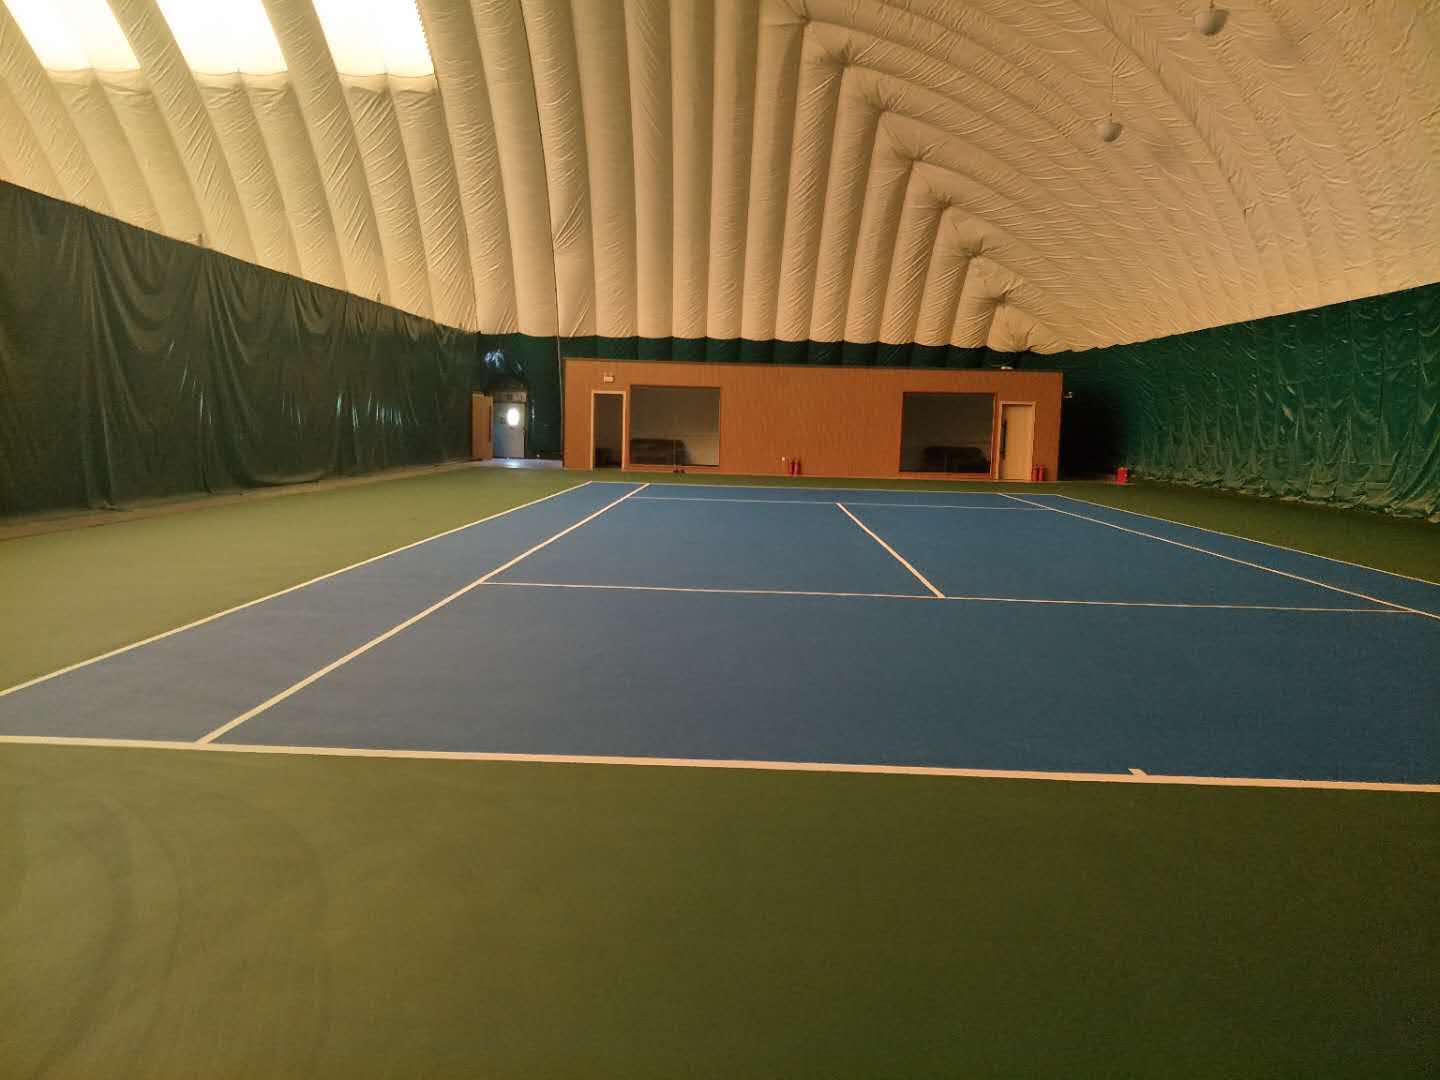 塑胶网球场